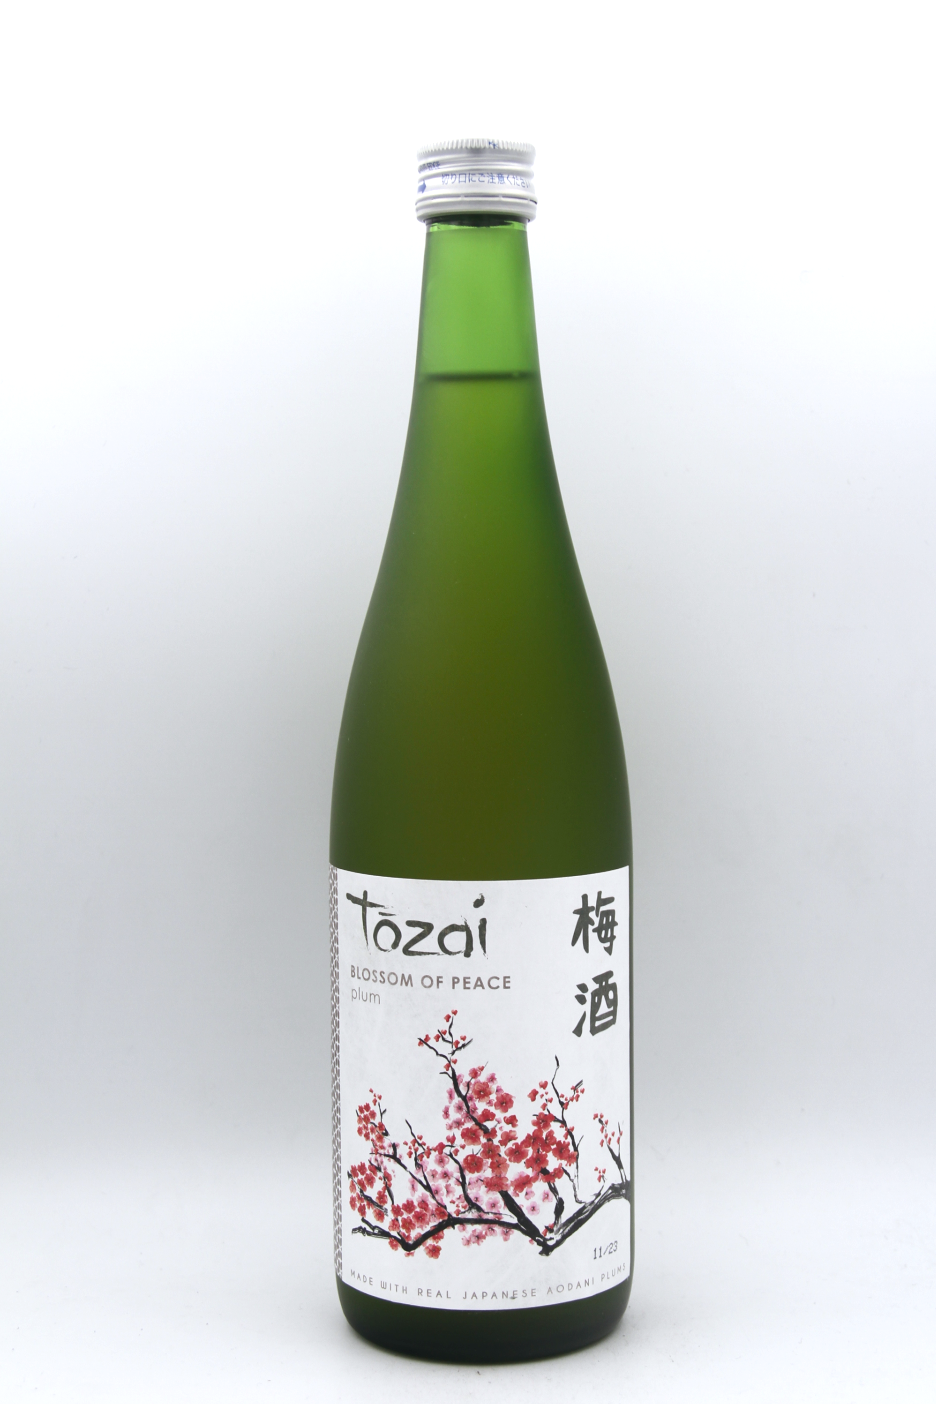 Tozai Blossom of Peace Plum Sake